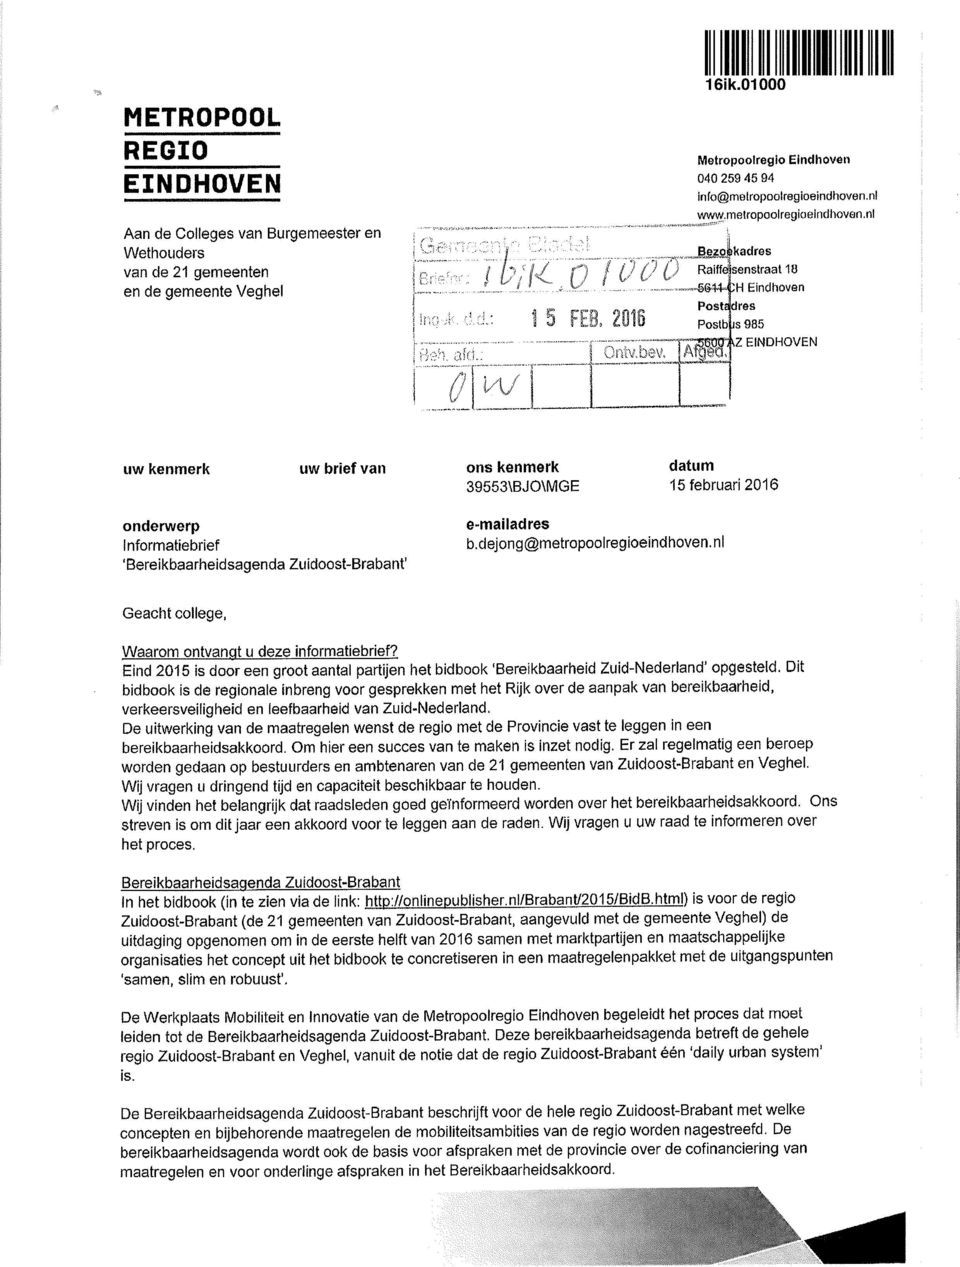 Raiffäkenstraat 10 -İ&14-ÇH Eindhoven Postadres PostbĮjs 985 Z uw kenmerk uw brief van ons kenmerk datum 39553\BJO\MGE 15 februari 2016 onderwerp Informatiebrief 'Bereikbaarheidsagenda